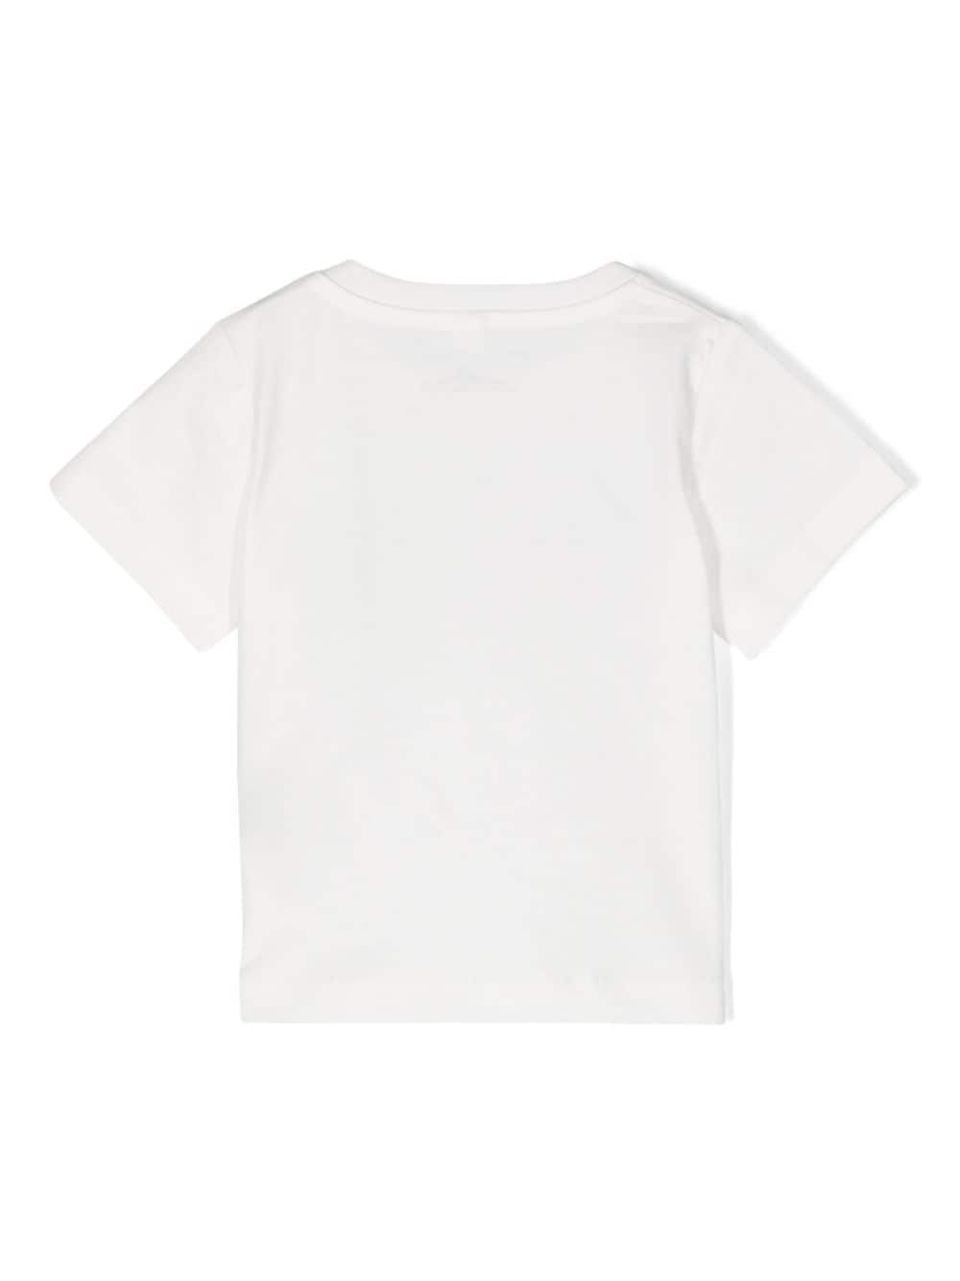 Shell print t-shirt